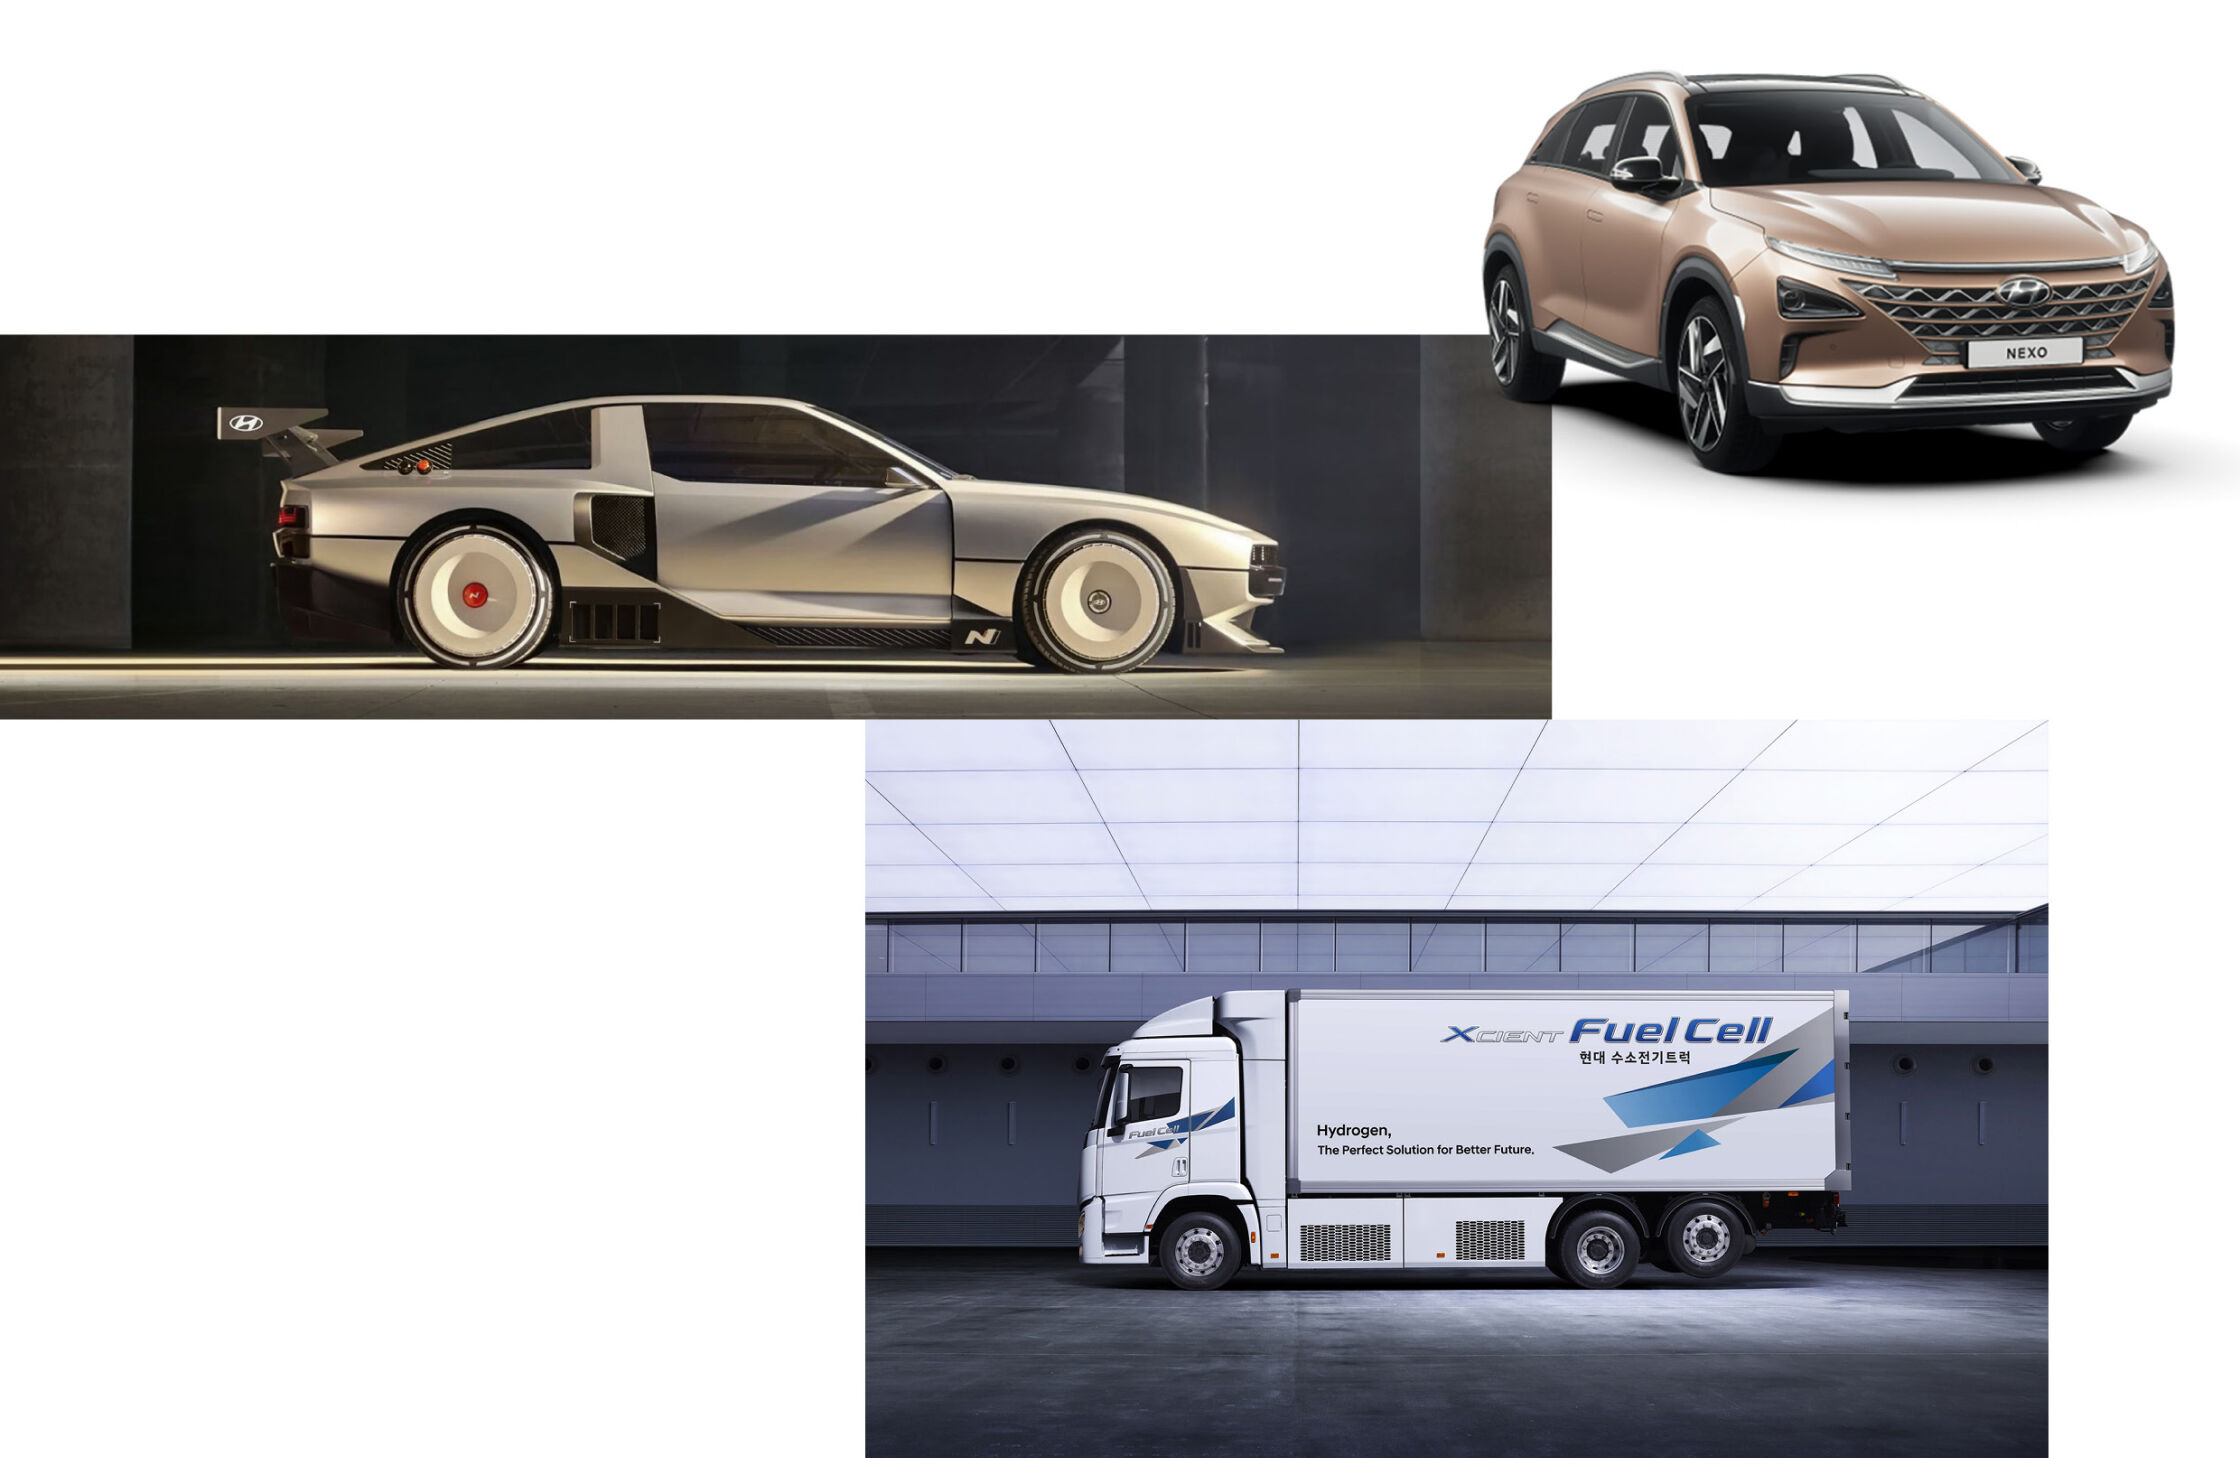 Hyundaiの水素燃料電池技術が適用されたネッソ(NEXO), エクシエントピュアセル、Nビジョン74（XCIENT Fuel Cell, N vision 74）コンセプトの様子   -  ヒョンデモビリティジャパン ブランドストーリー